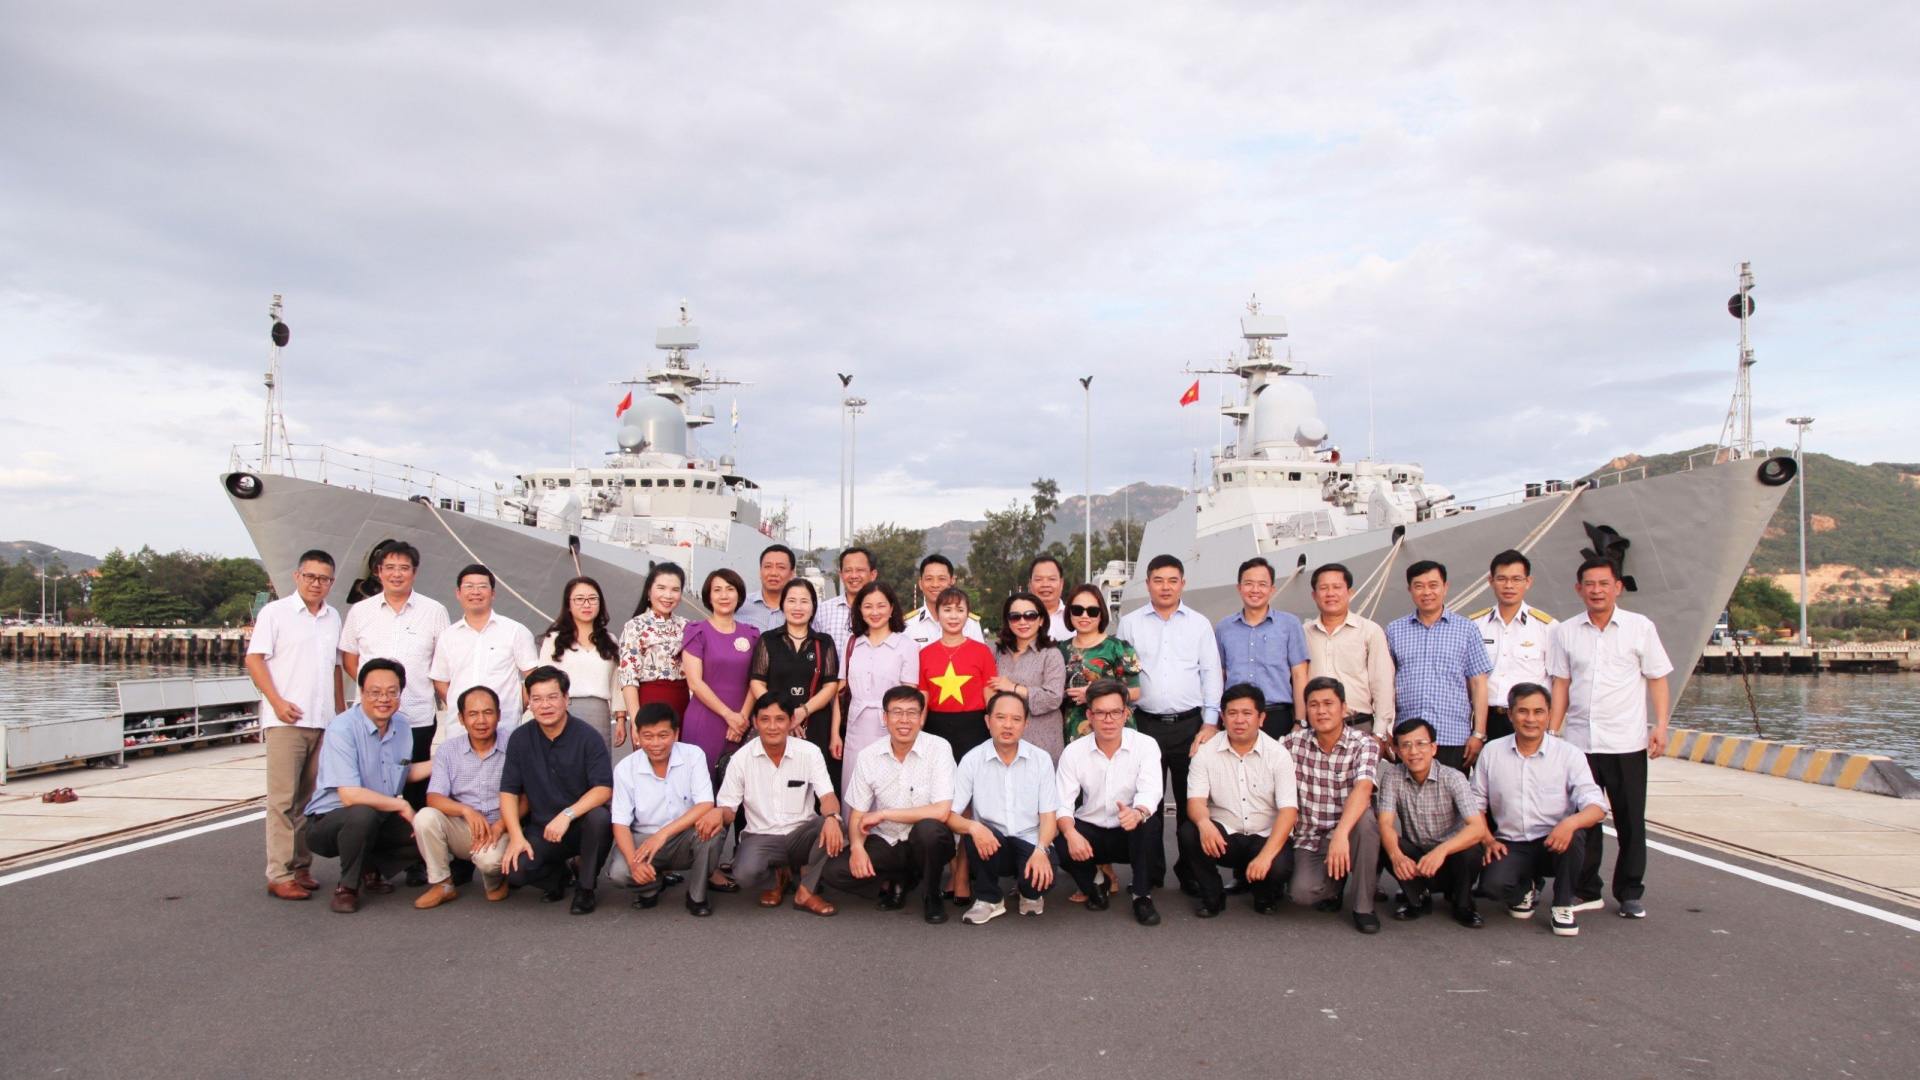 Lớp bồi dưỡng ngạnh chuyên viên cao cấp khoá 18 tỉnh Lâm Đồng nghiên cứu thực tế tại Vùng 4 Hải quân